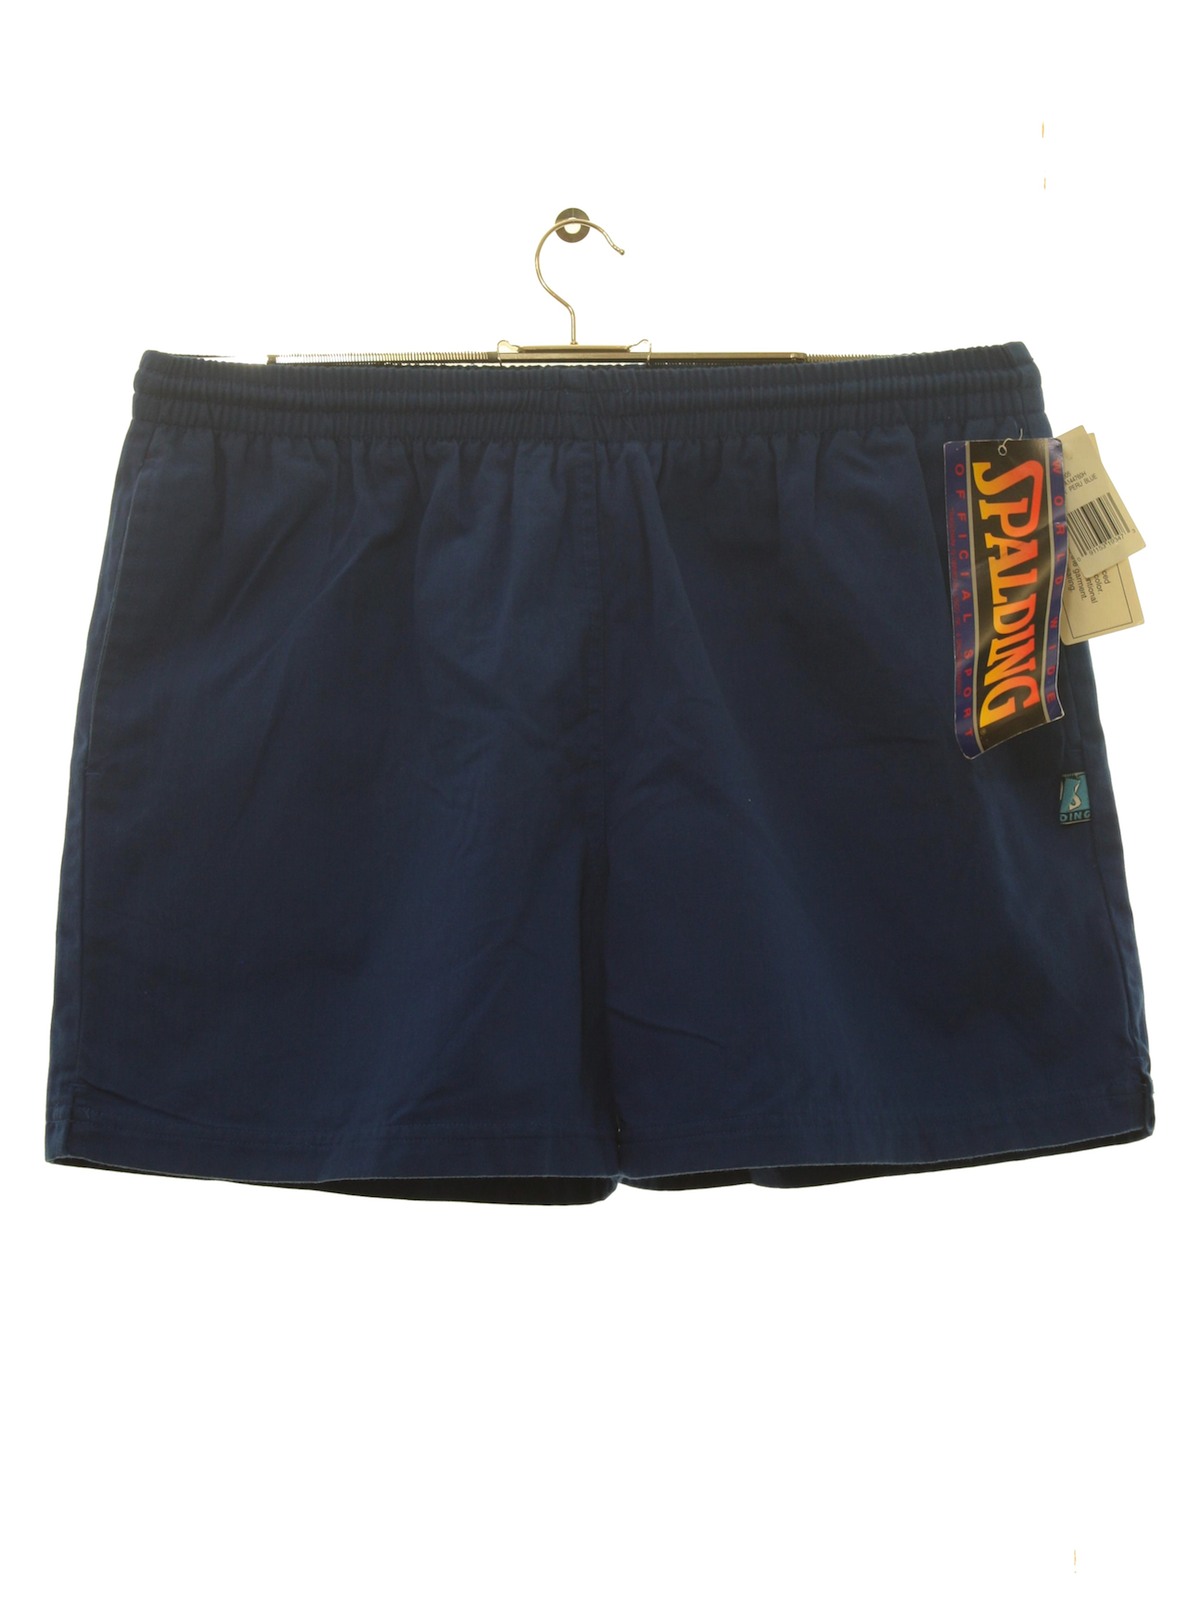 Spalding 90's Vintage Shorts: 90s -Spalding- Mens royal blue background ...